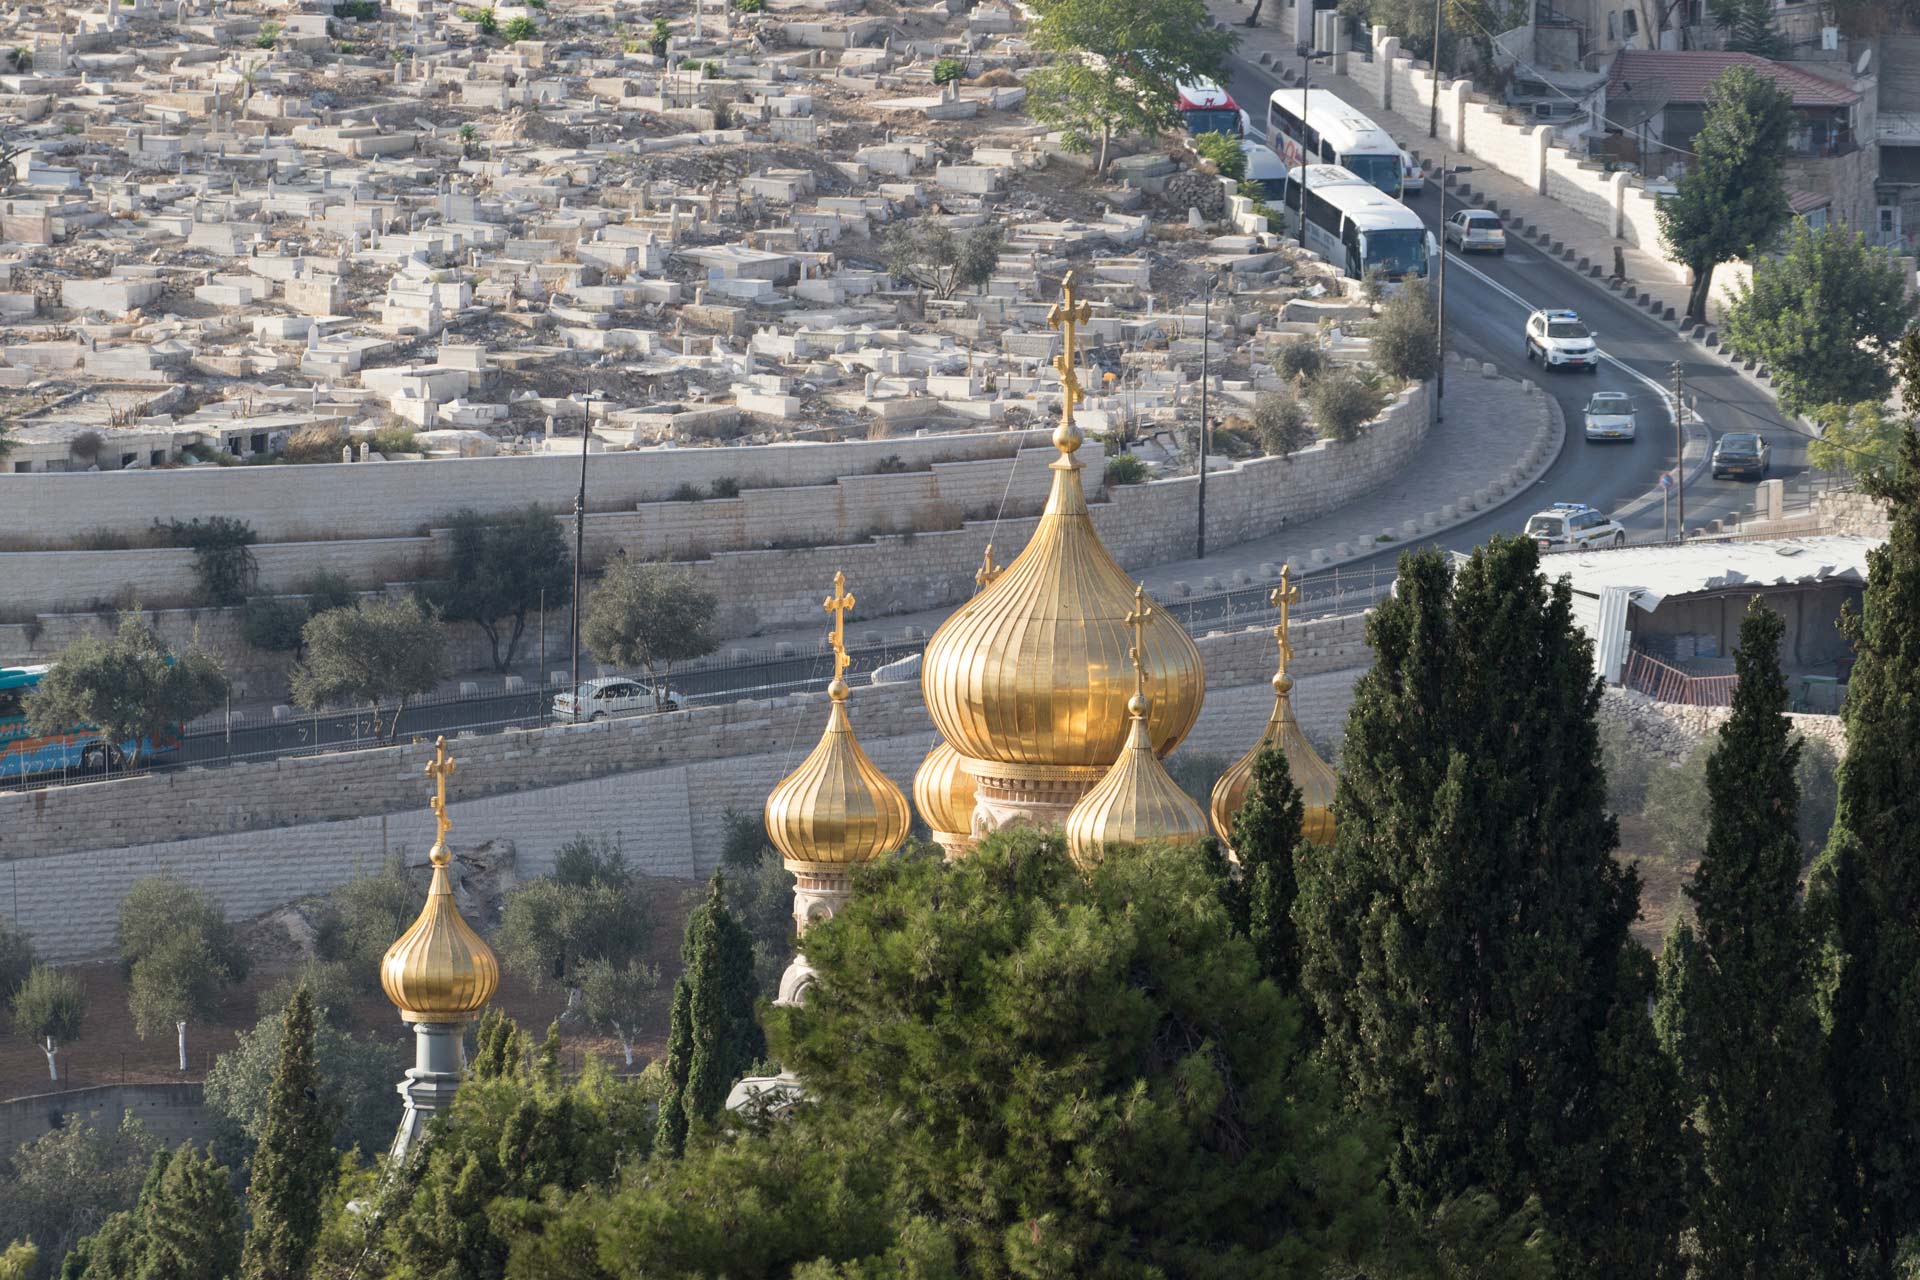 Israel's World Heritage Sites